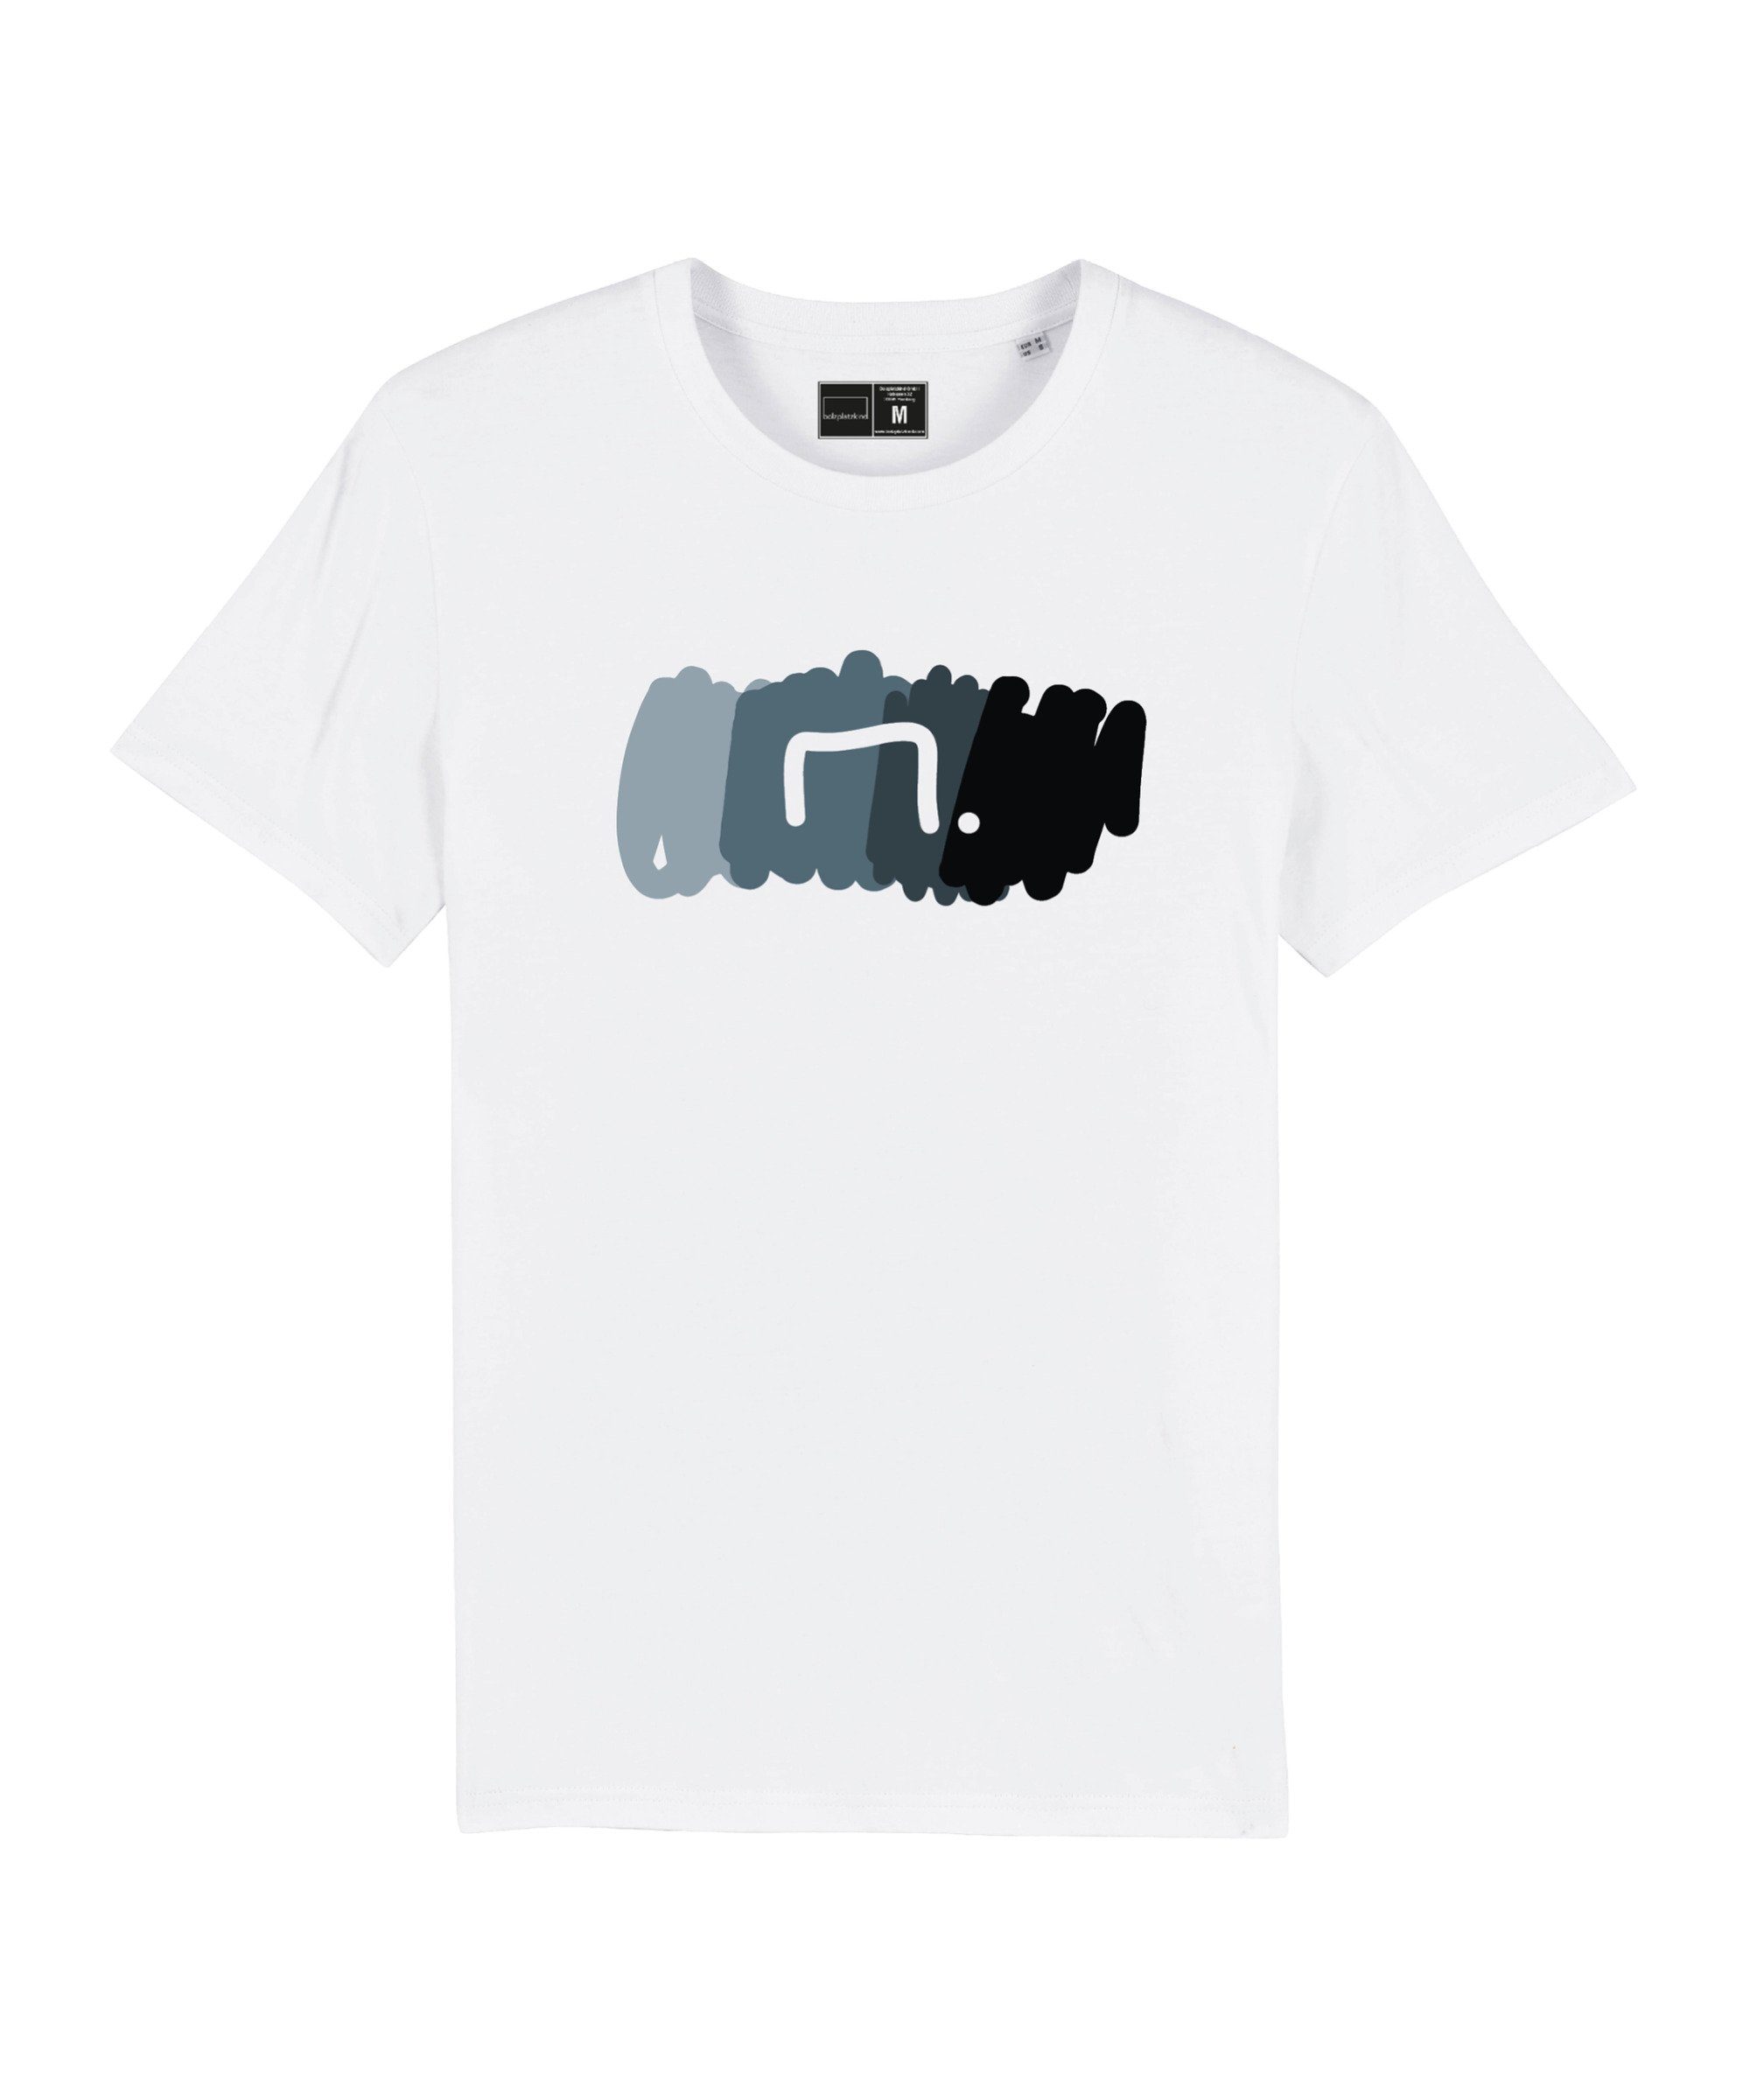 Bolzplatzkind T-Shirt "Free" T-Shirt Nachhaltiges Produkt weissgrau